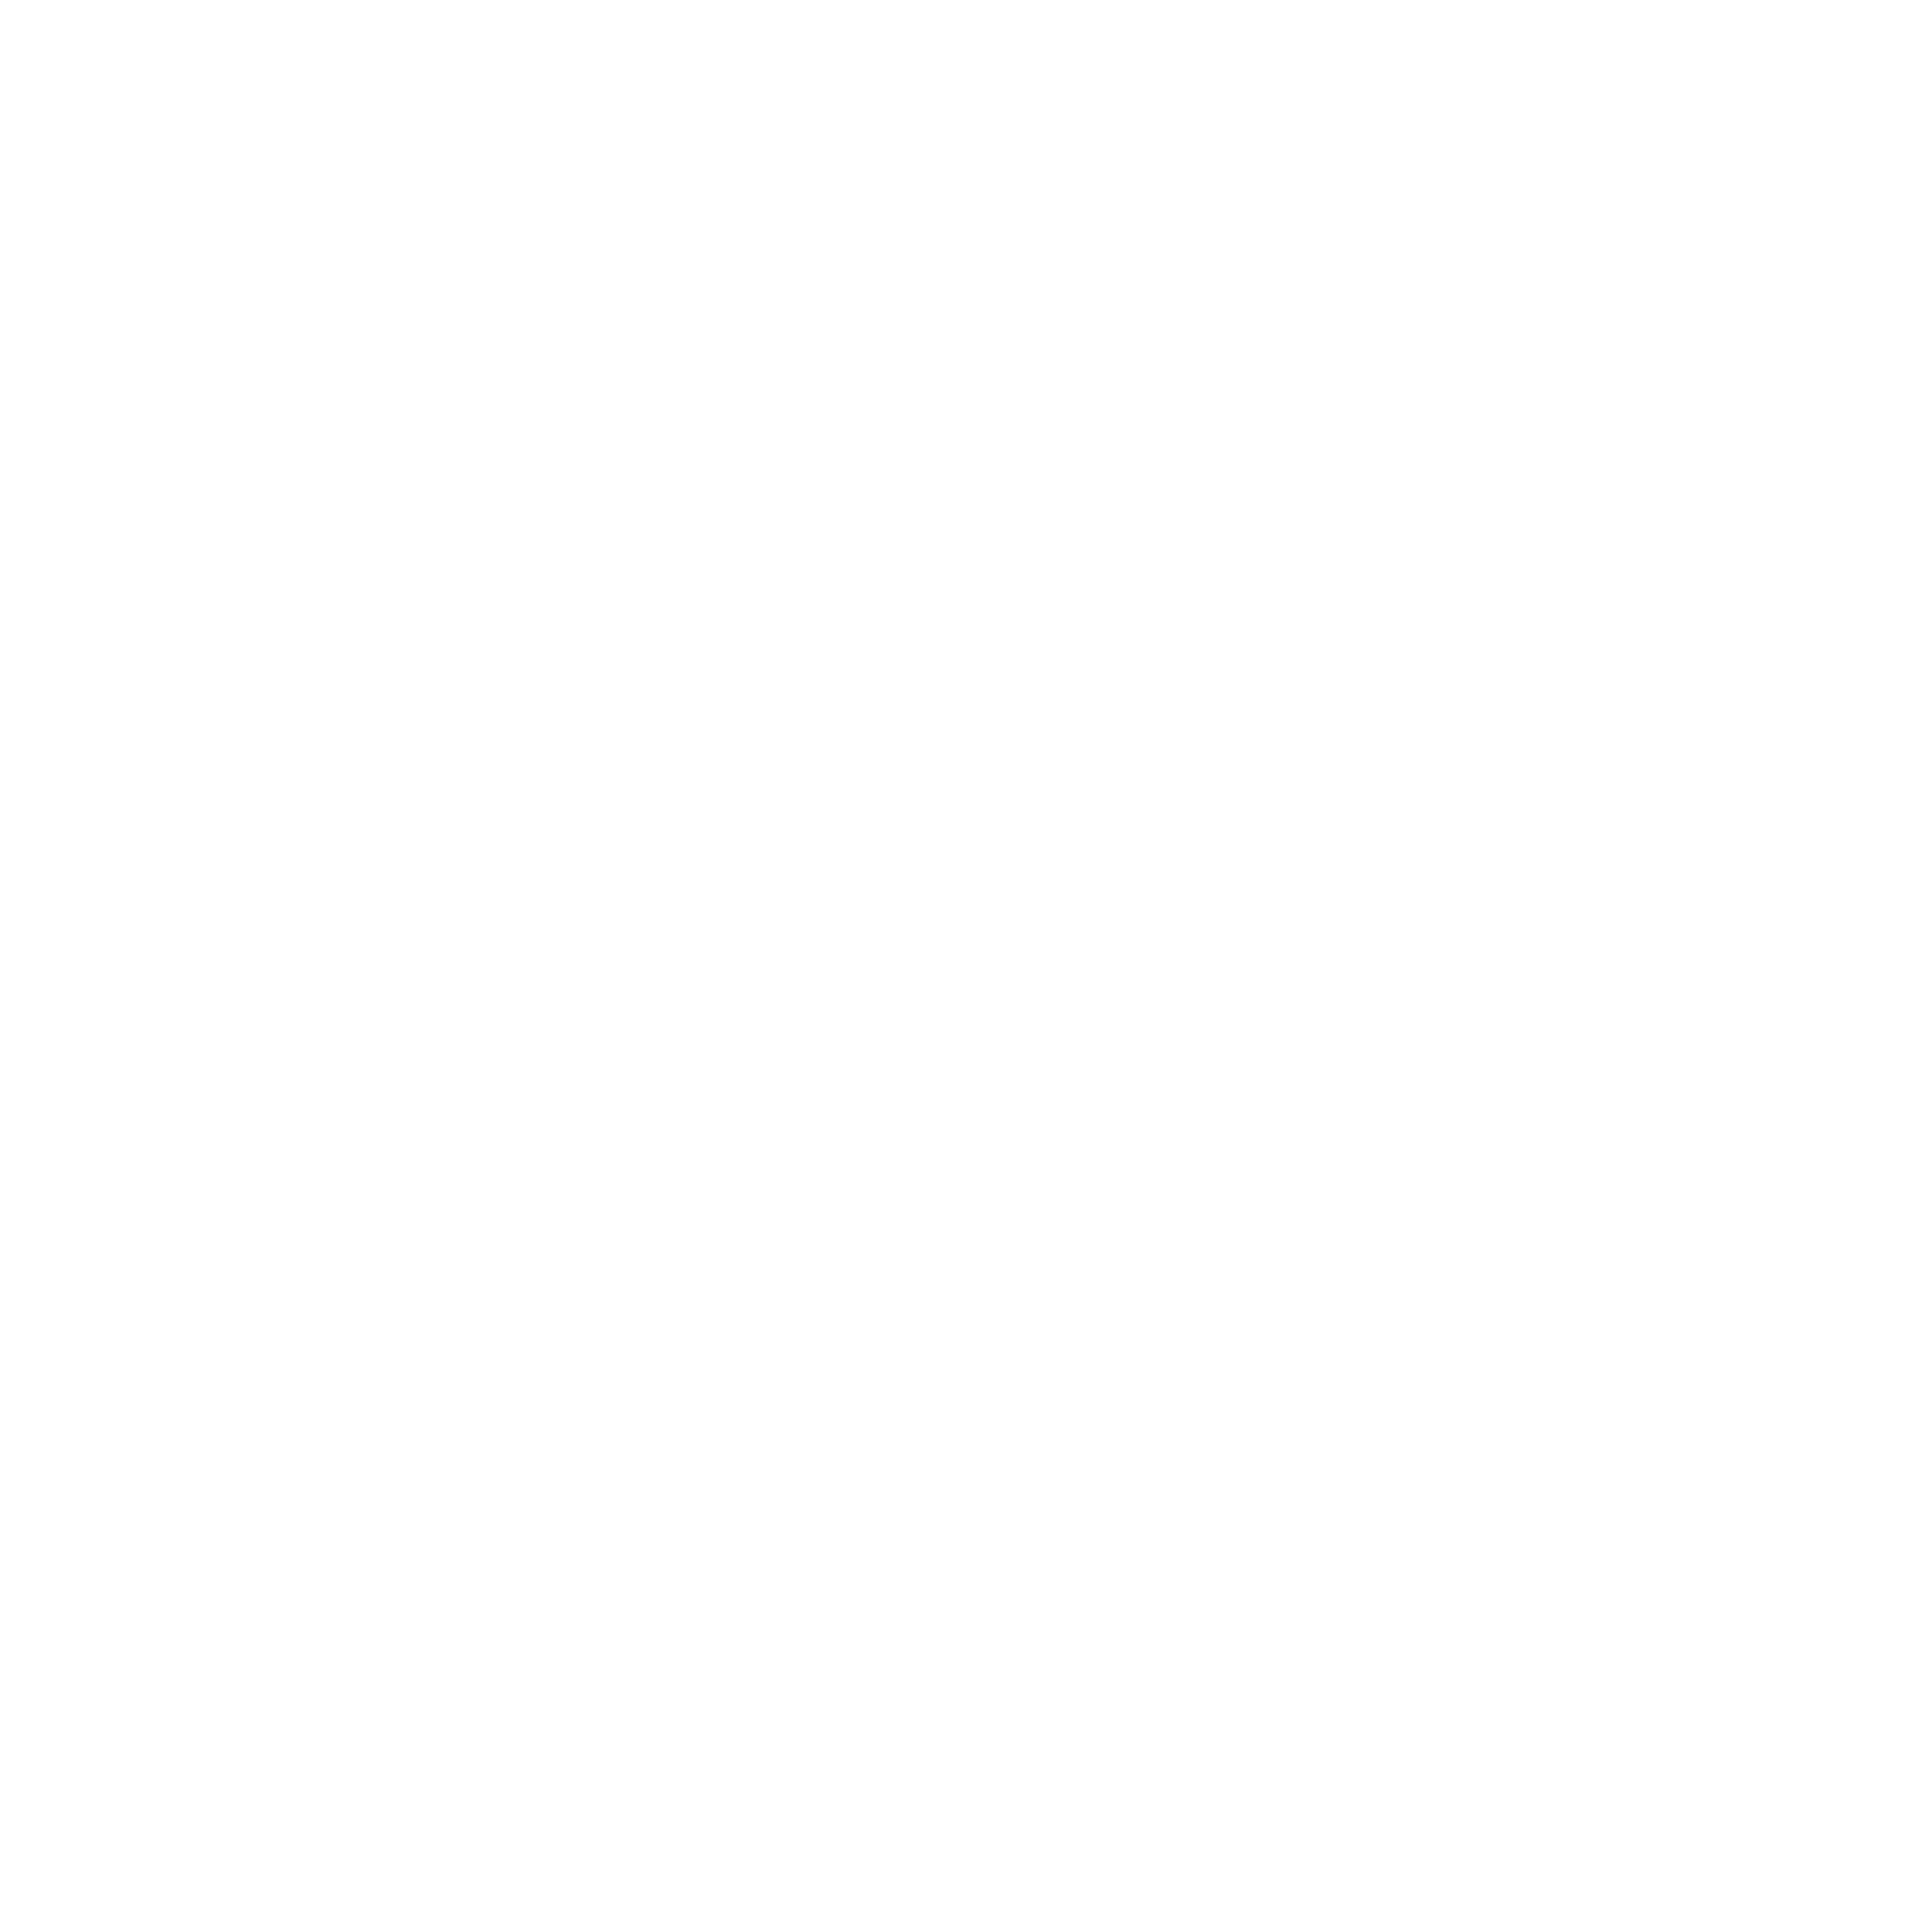 Extended Family